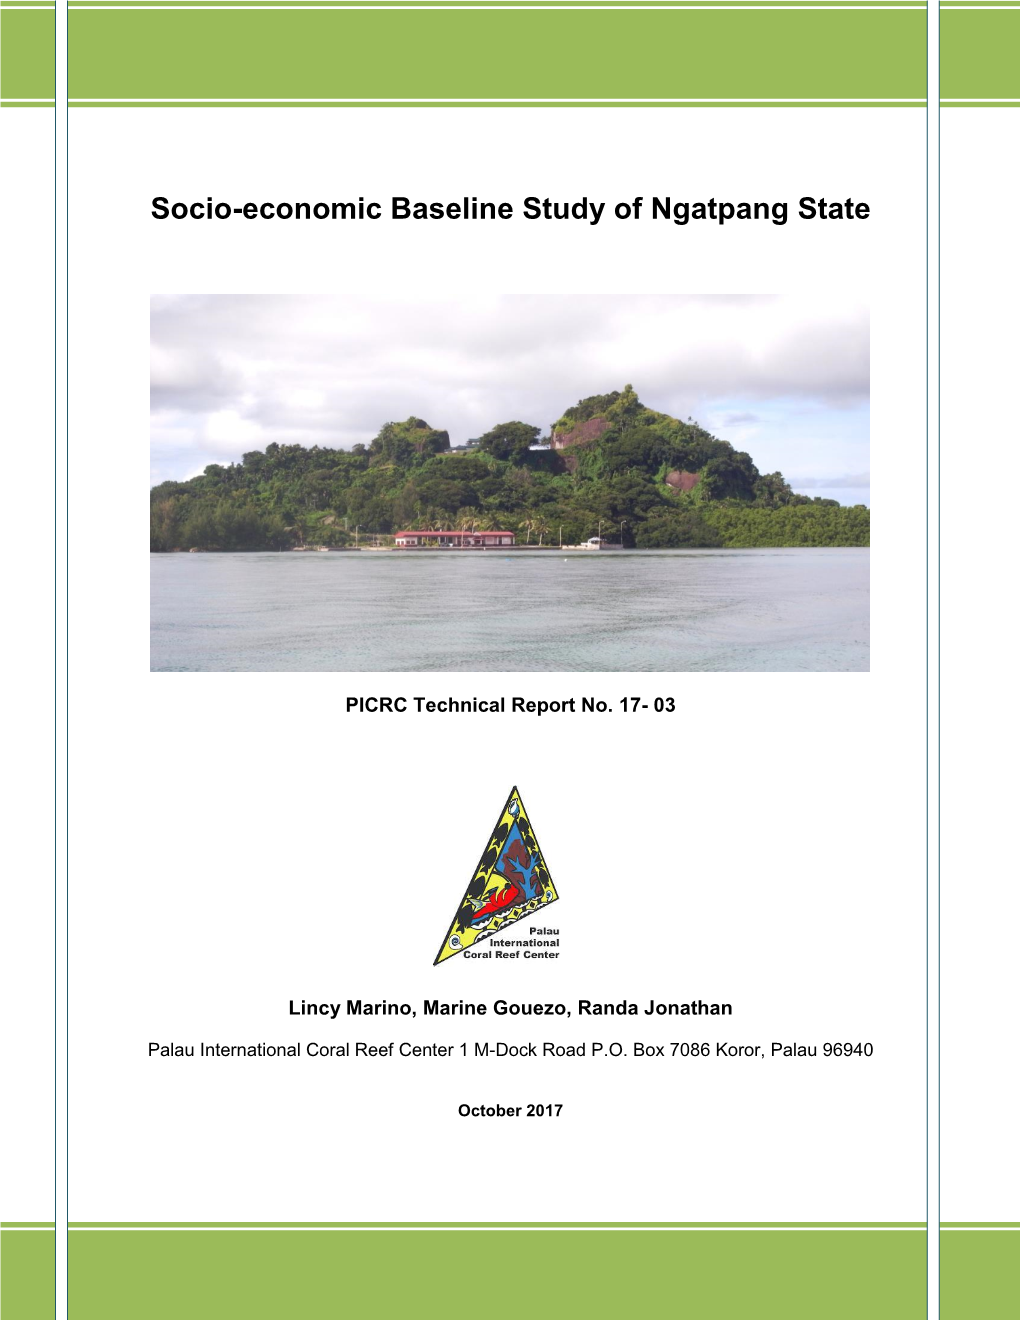 Socio-Economic Baseline Study of Ngatpang State